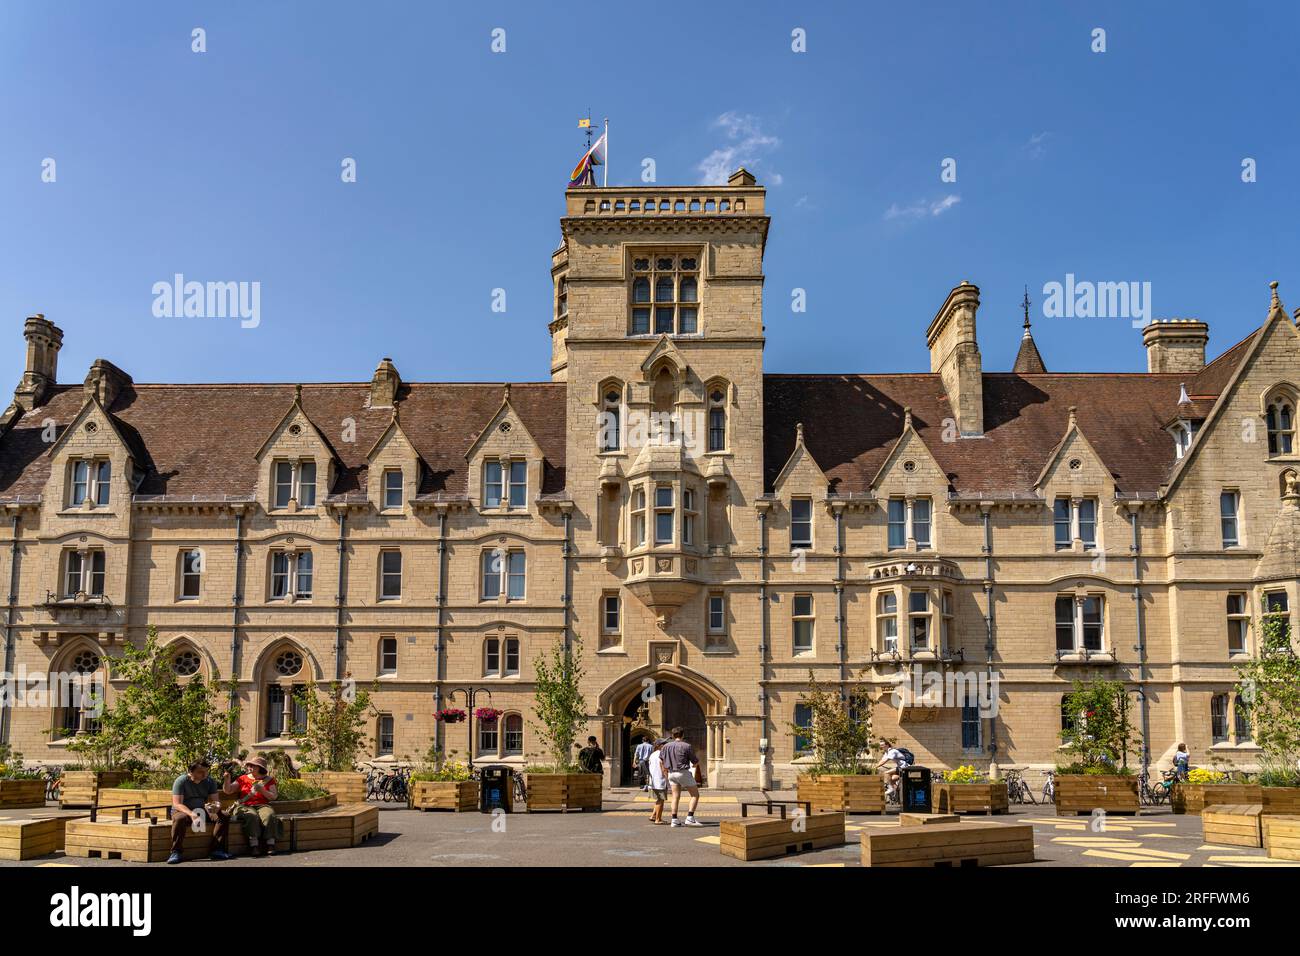 Balliol College, Università di Oxford, Oxford, Oxfordshire, Inghilterra, Großbritannien, Europa | Balliol College, Università di Oxford, Oxford, Oxfords Foto Stock